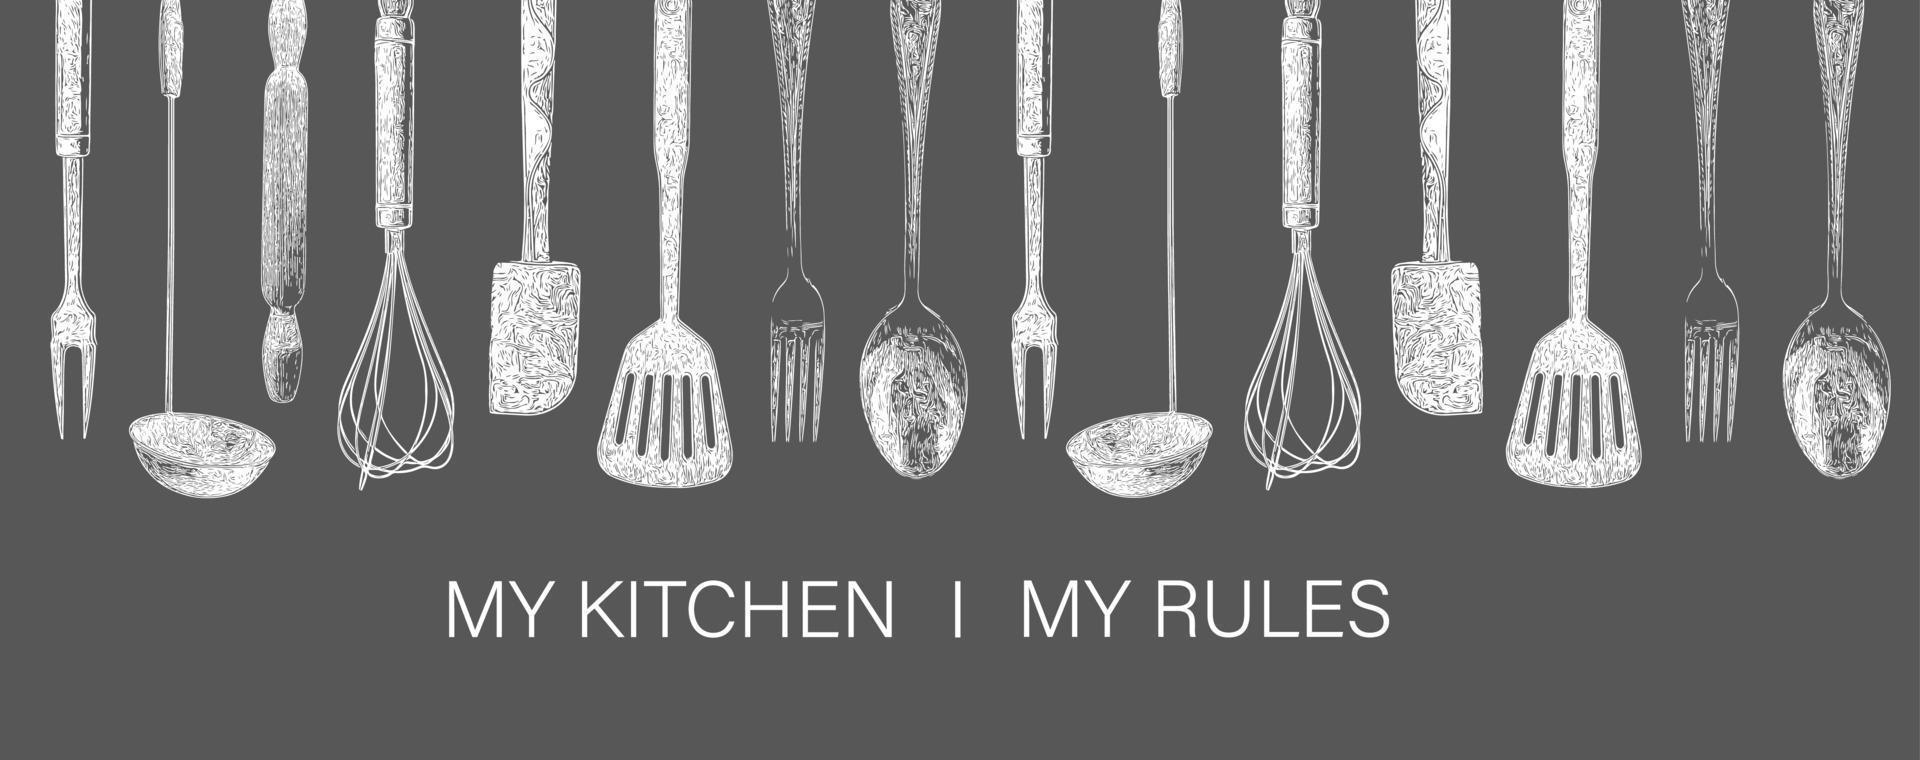 handgetekende typografie poster.my keuken, mijn regels. vector